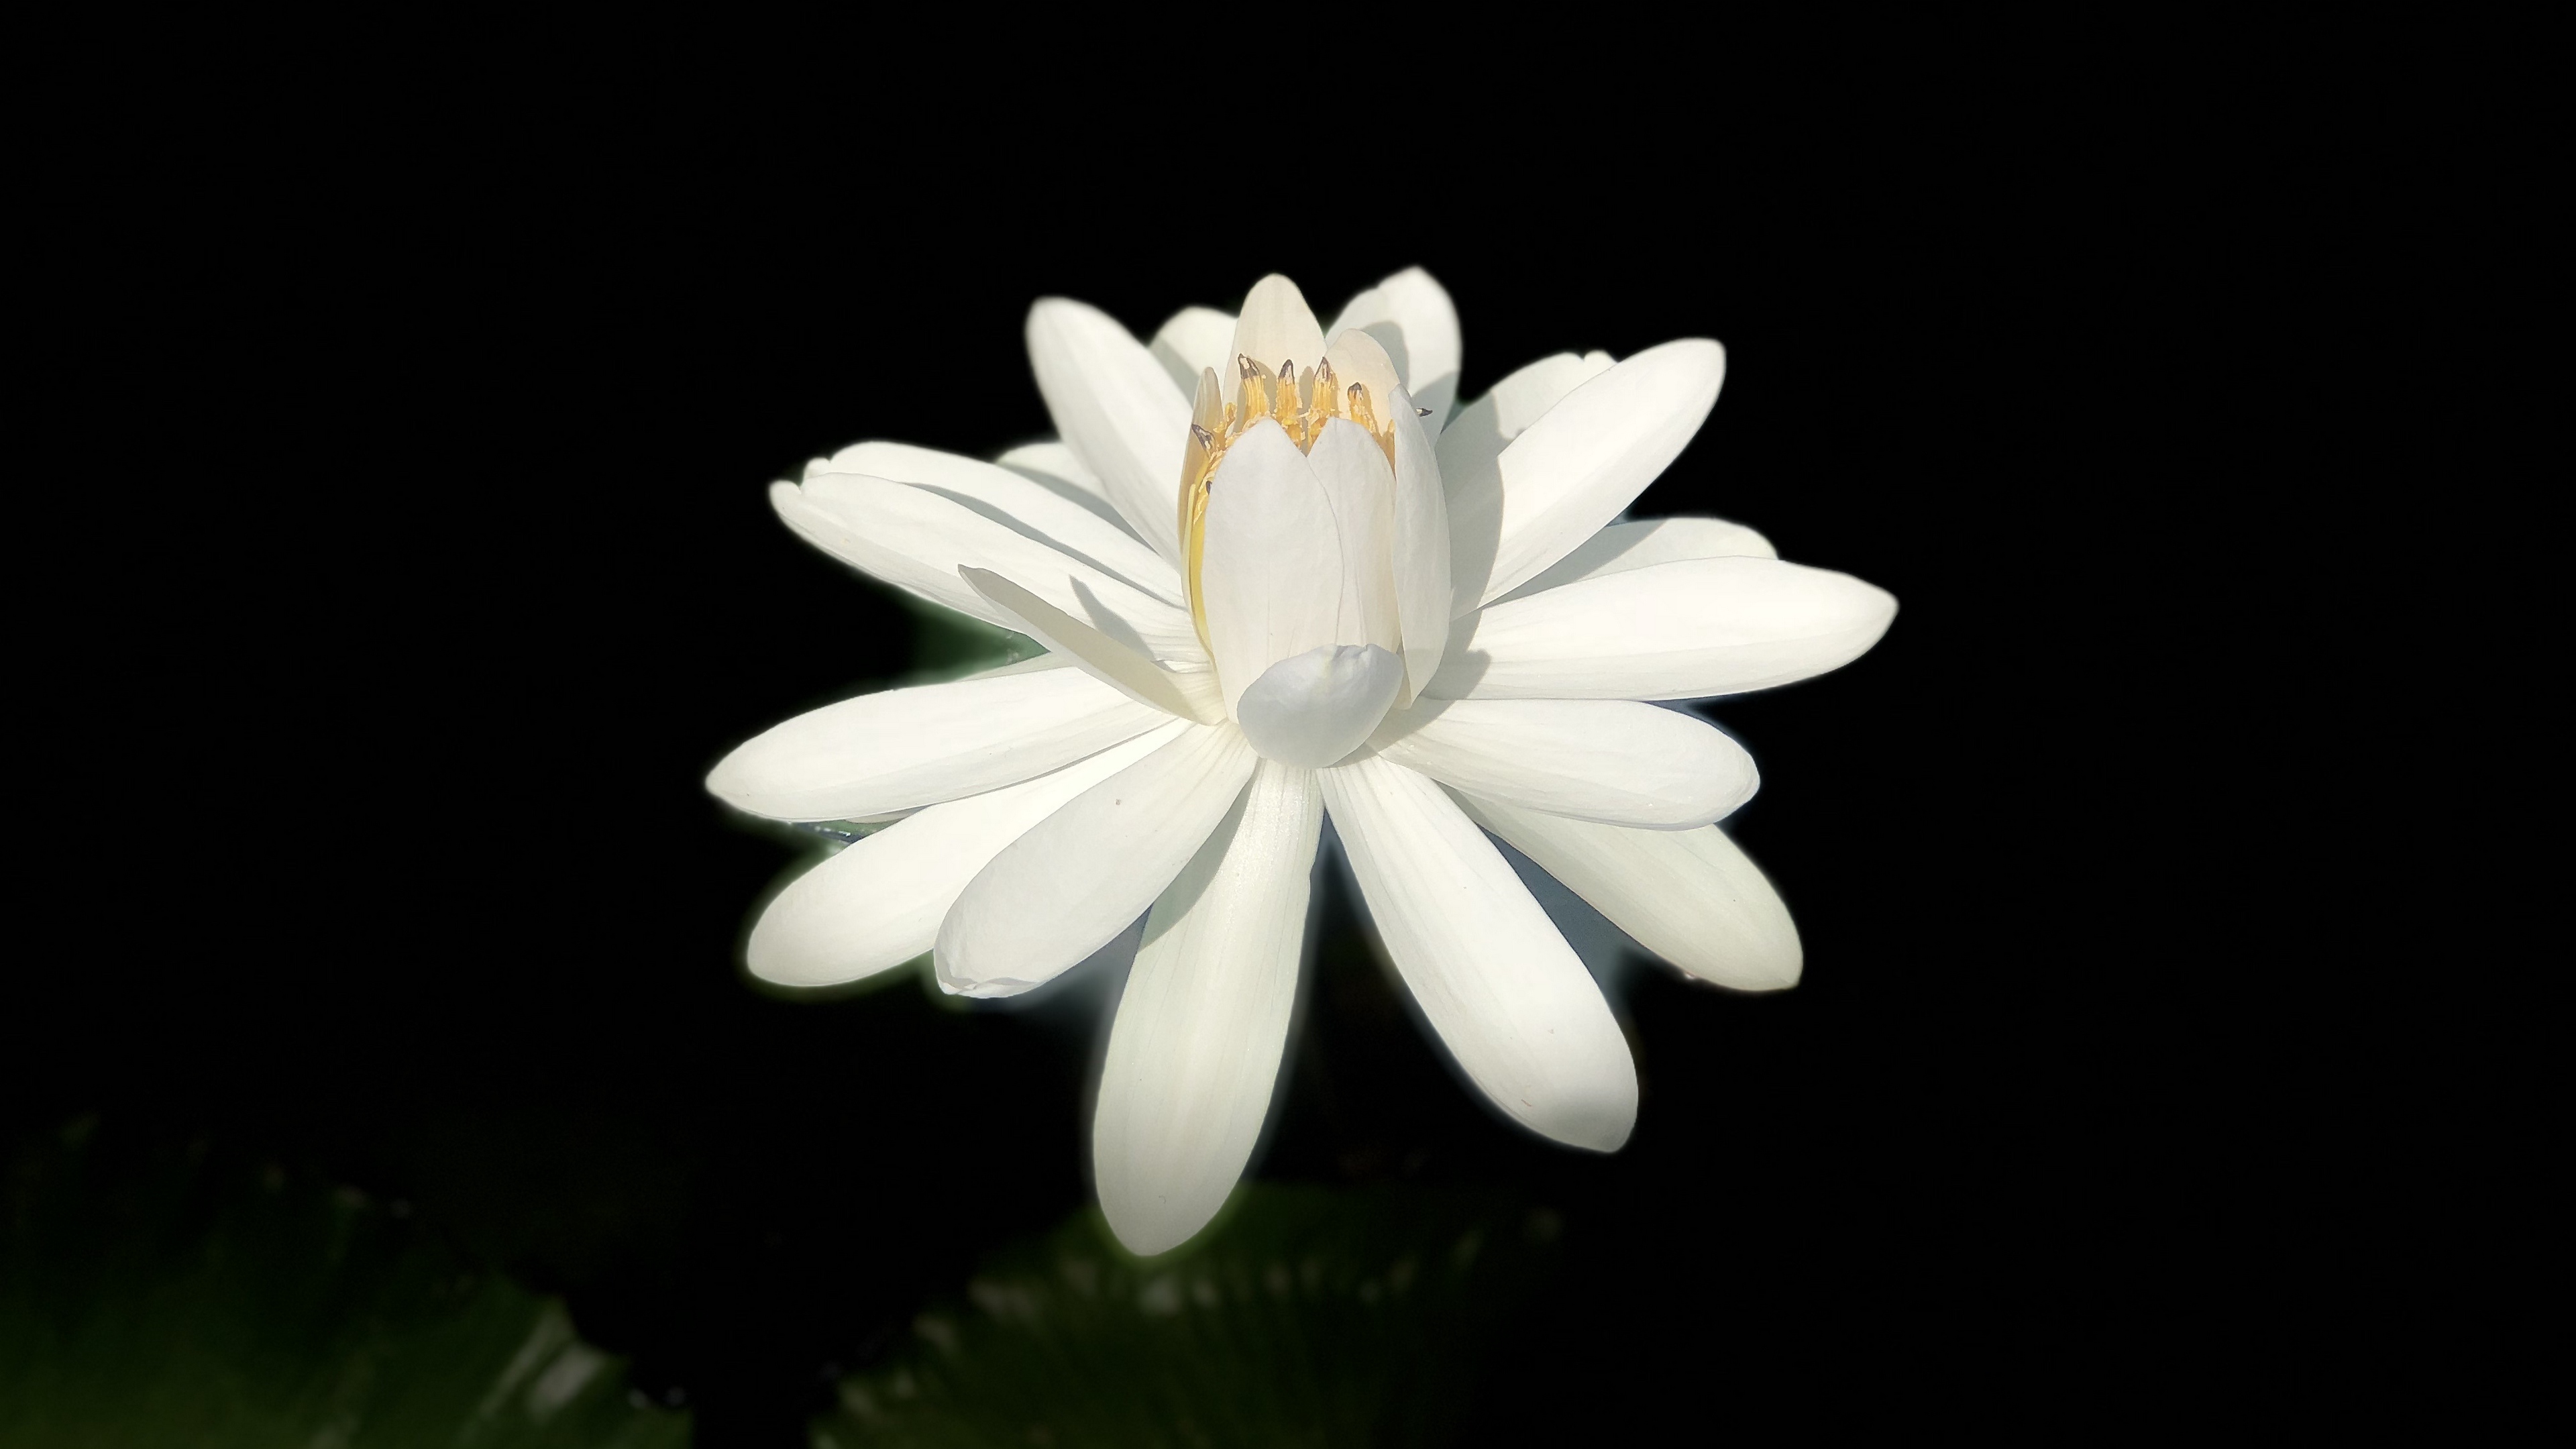 lotus white bloom dark background 4k 1540064748 - lotus, white, bloom, dark background 4k - white, Lotus, Bloom